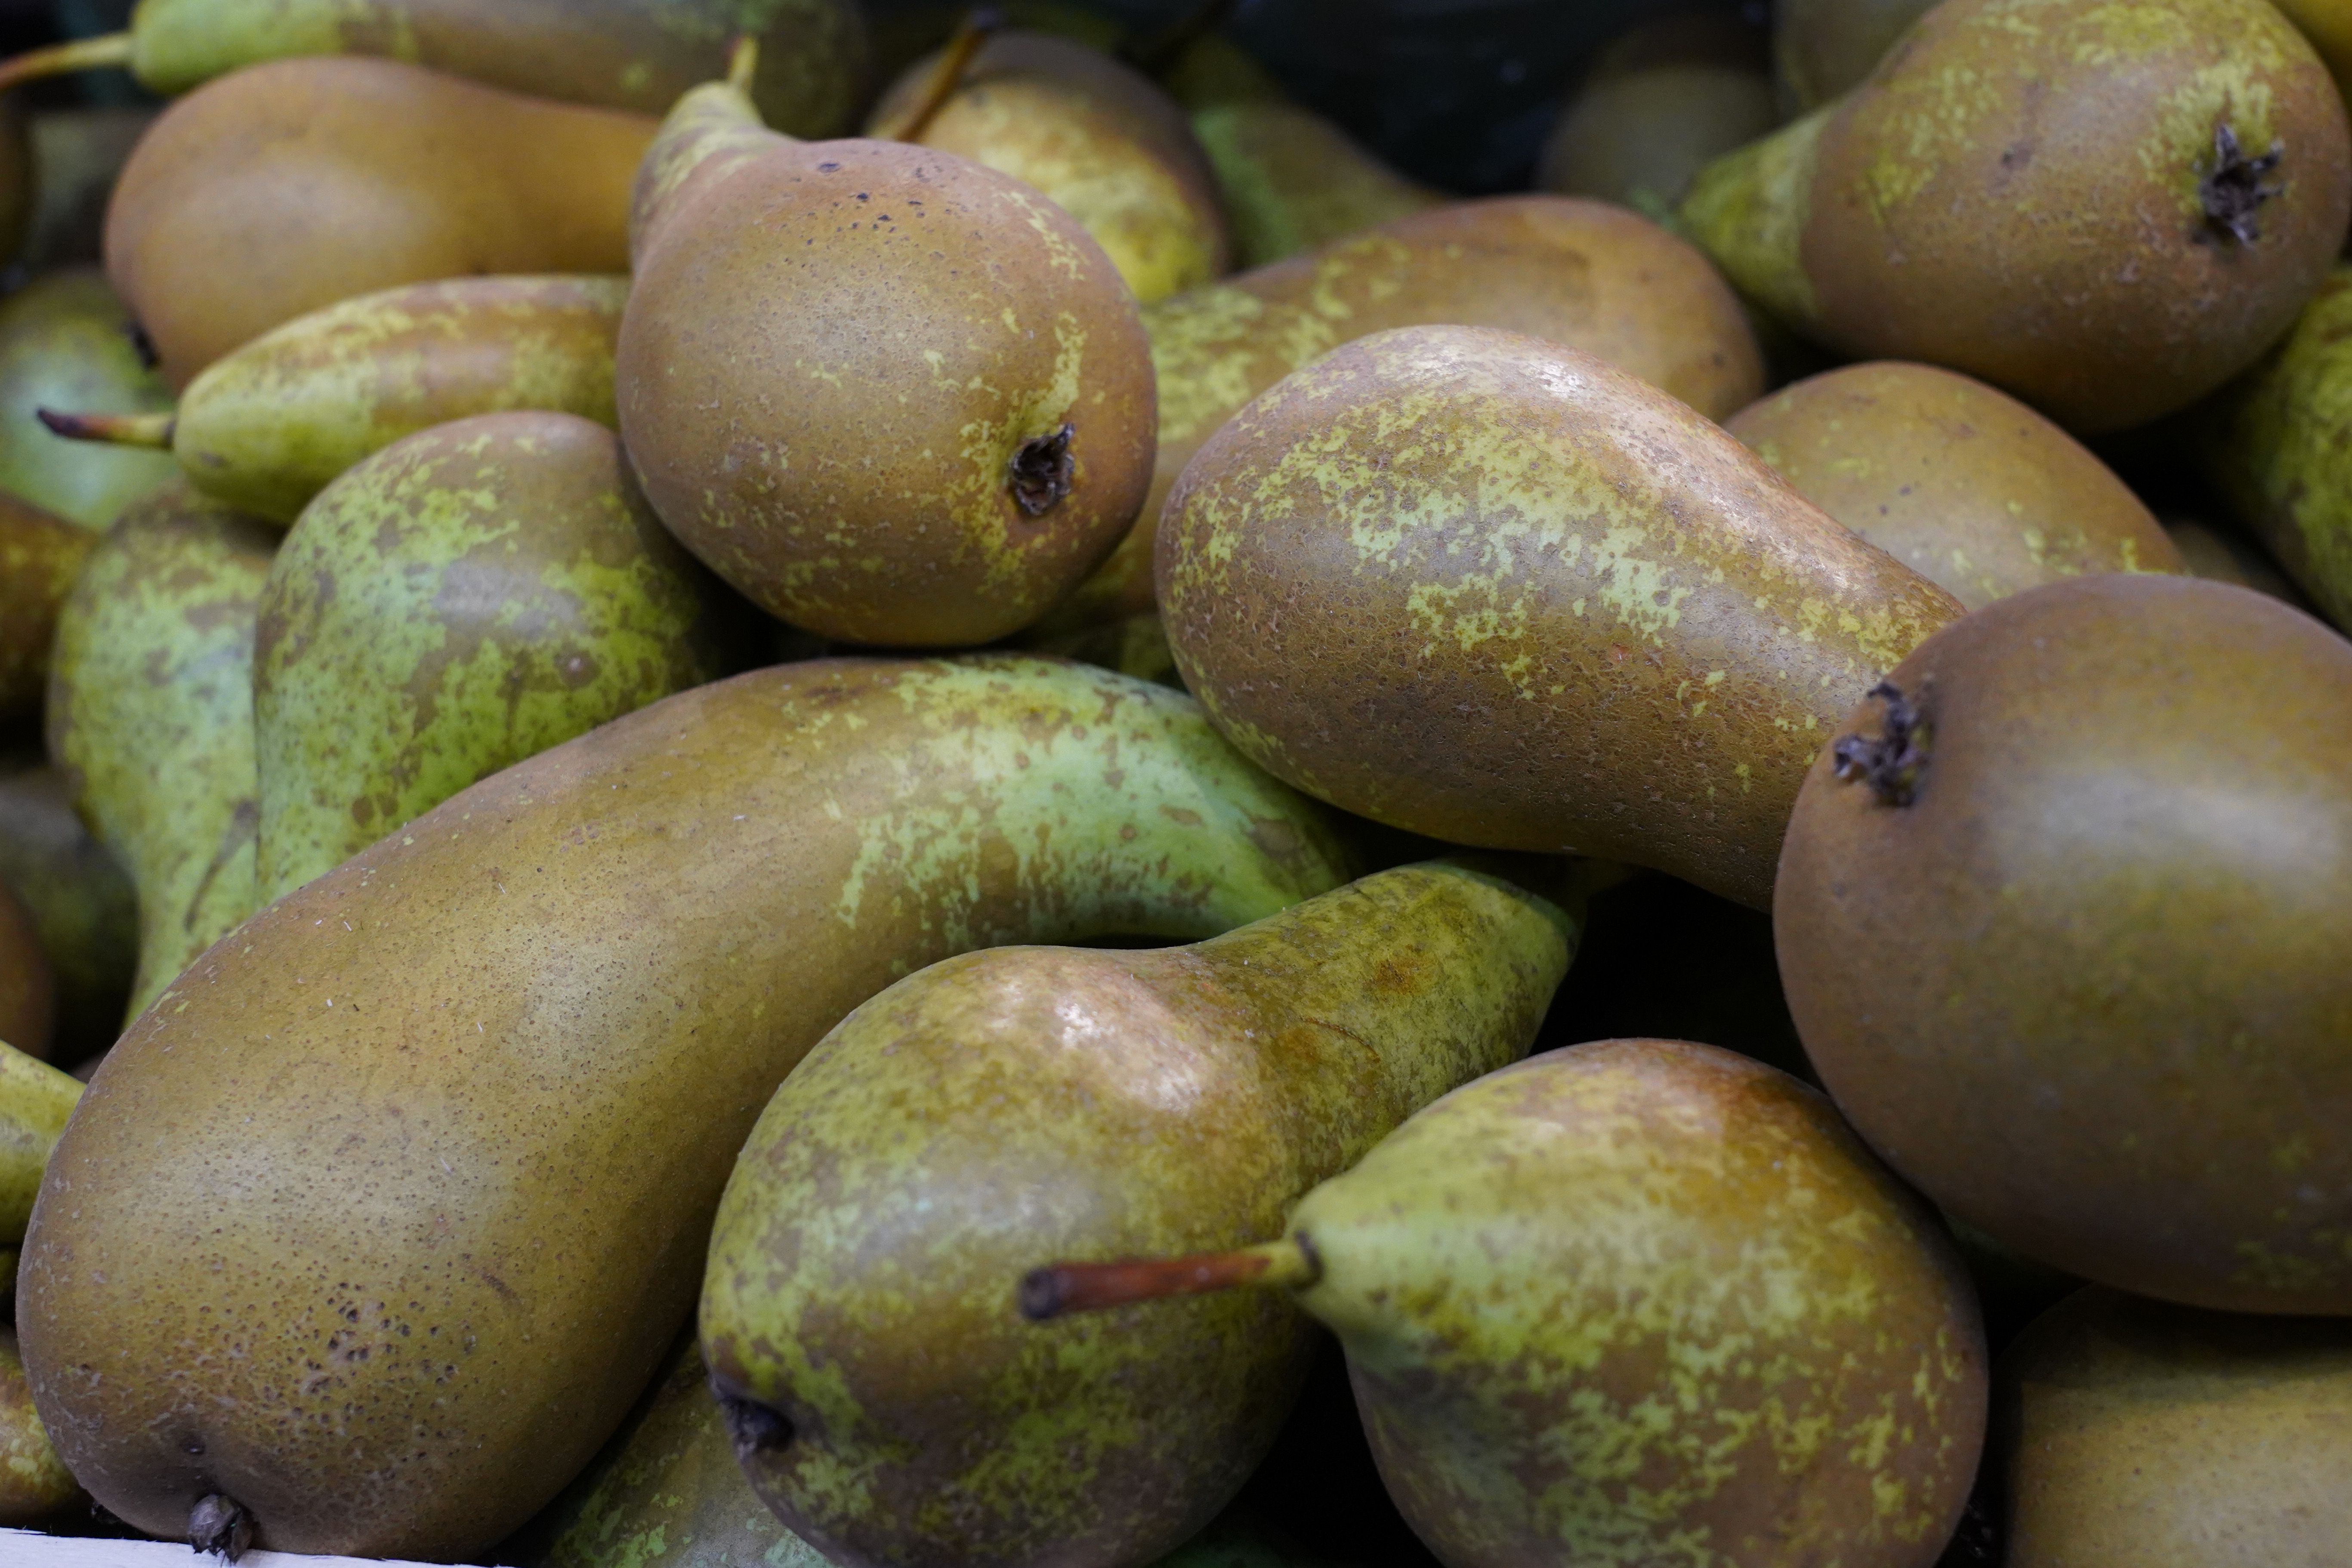 ¿Qué significan las manchas marrones en la piel de las peras? Foto: Bigstock